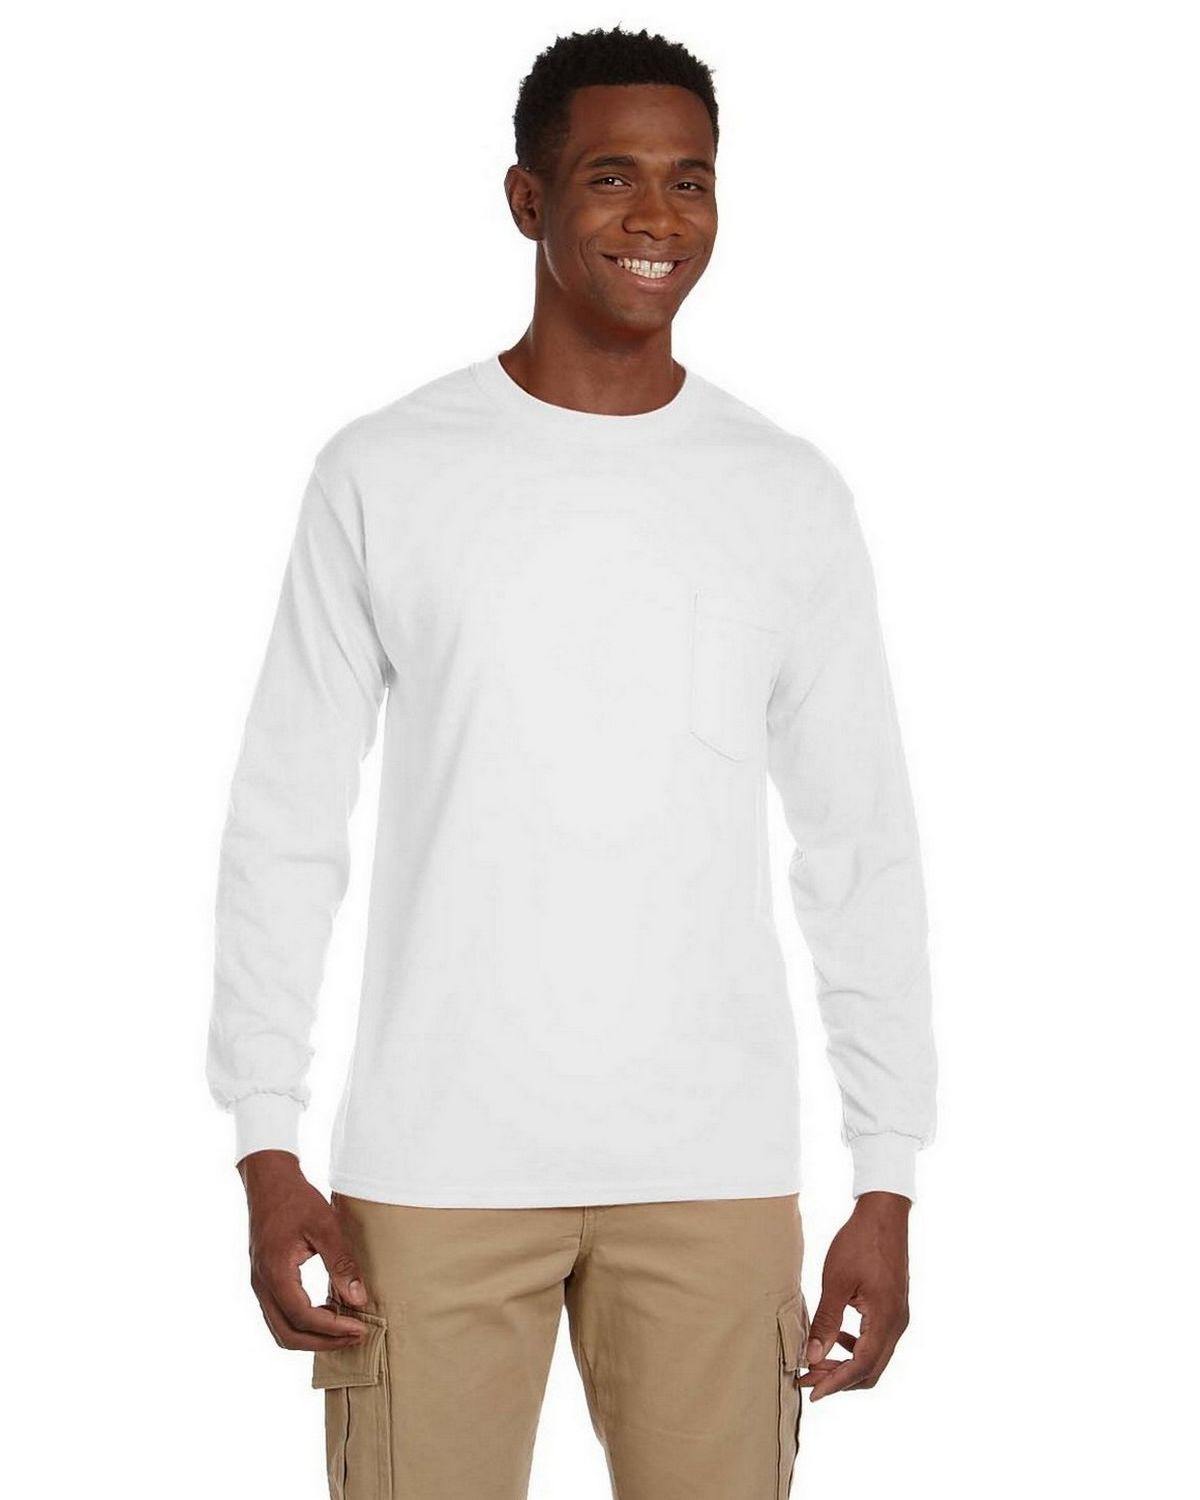 Gildan Men's Ultra Cotton Long Sleeve T-Shirt